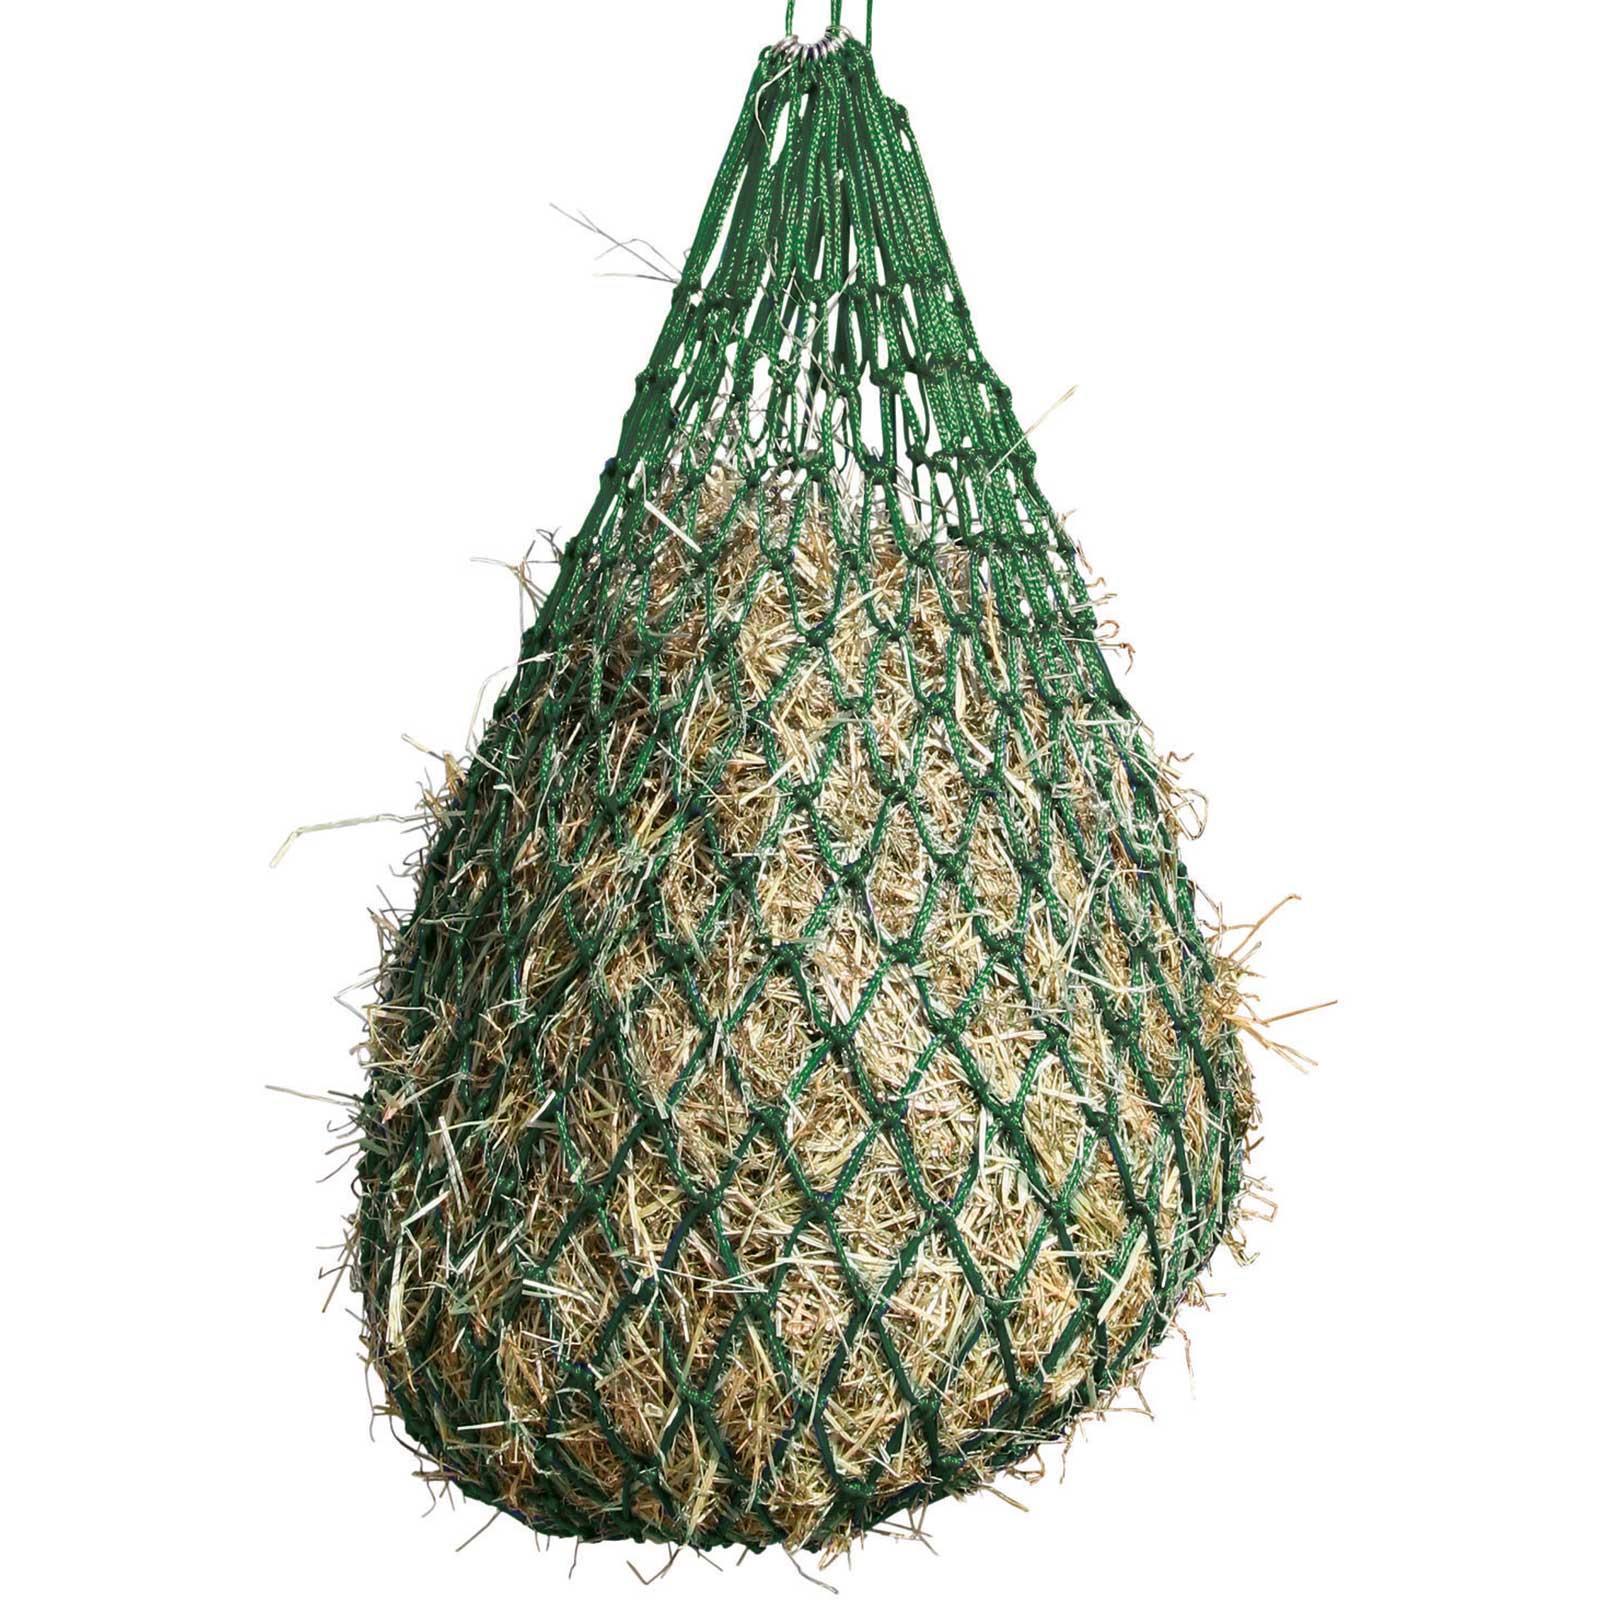 Szénaháló sűrű hálószemekkel 5x5cm Zöld